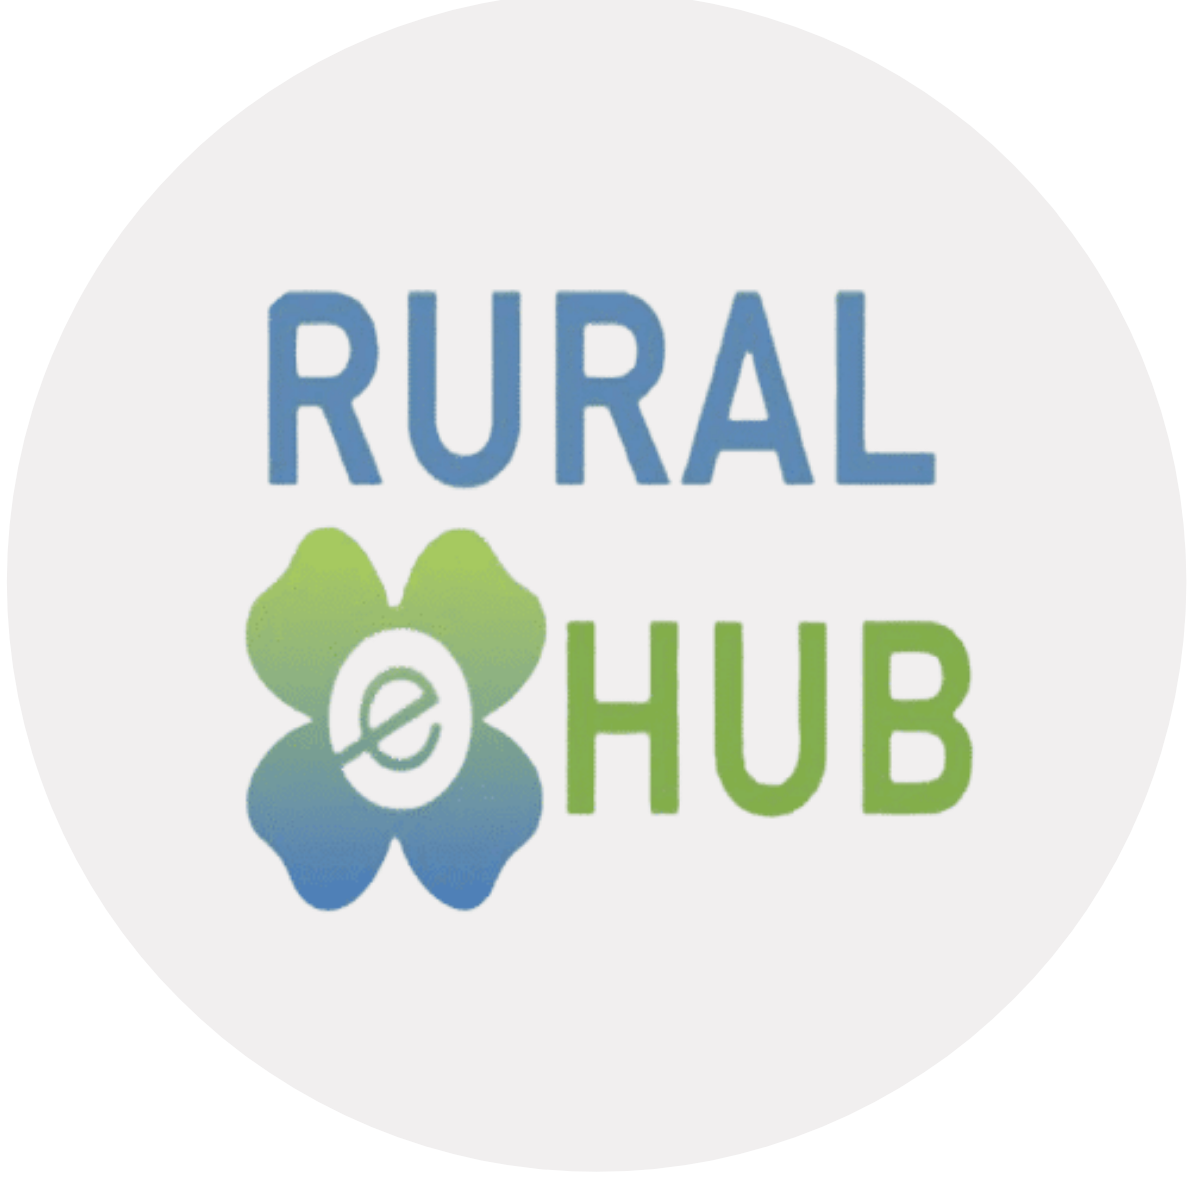 Rural eHUB logo